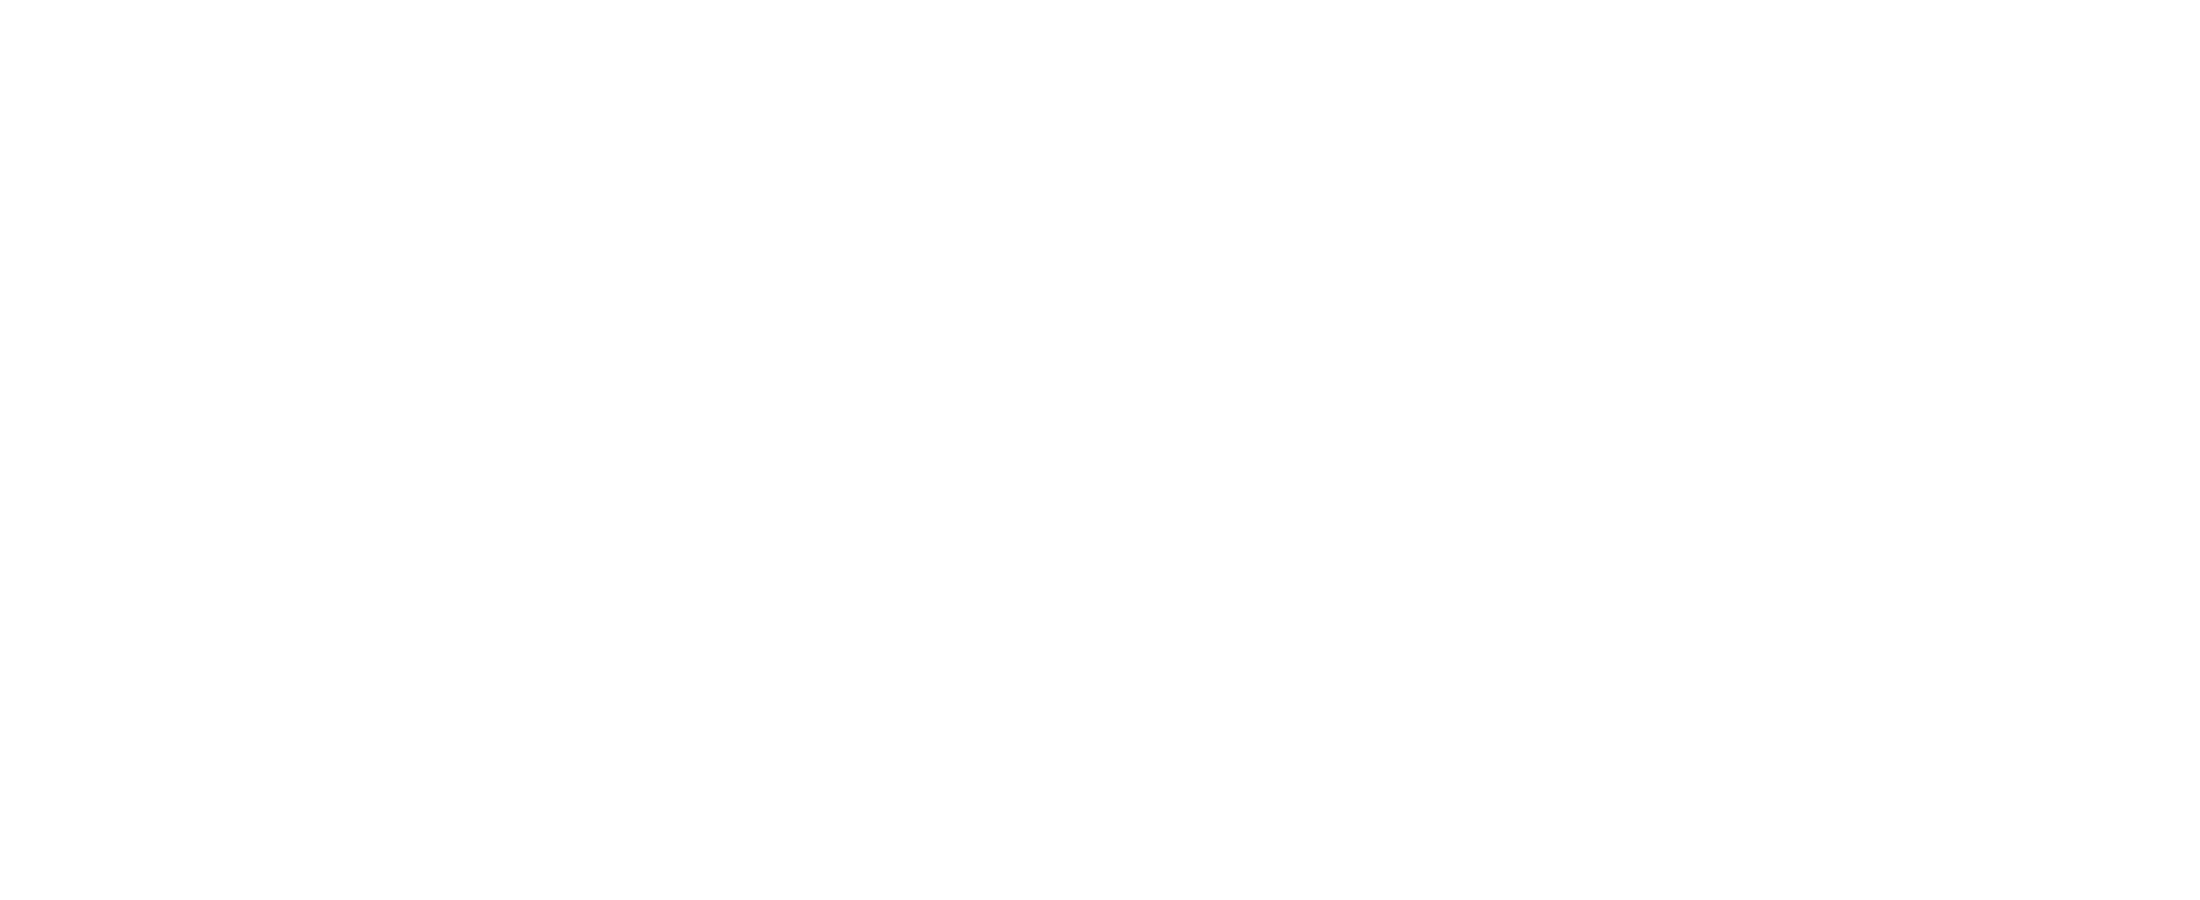 Clinix Member Portal